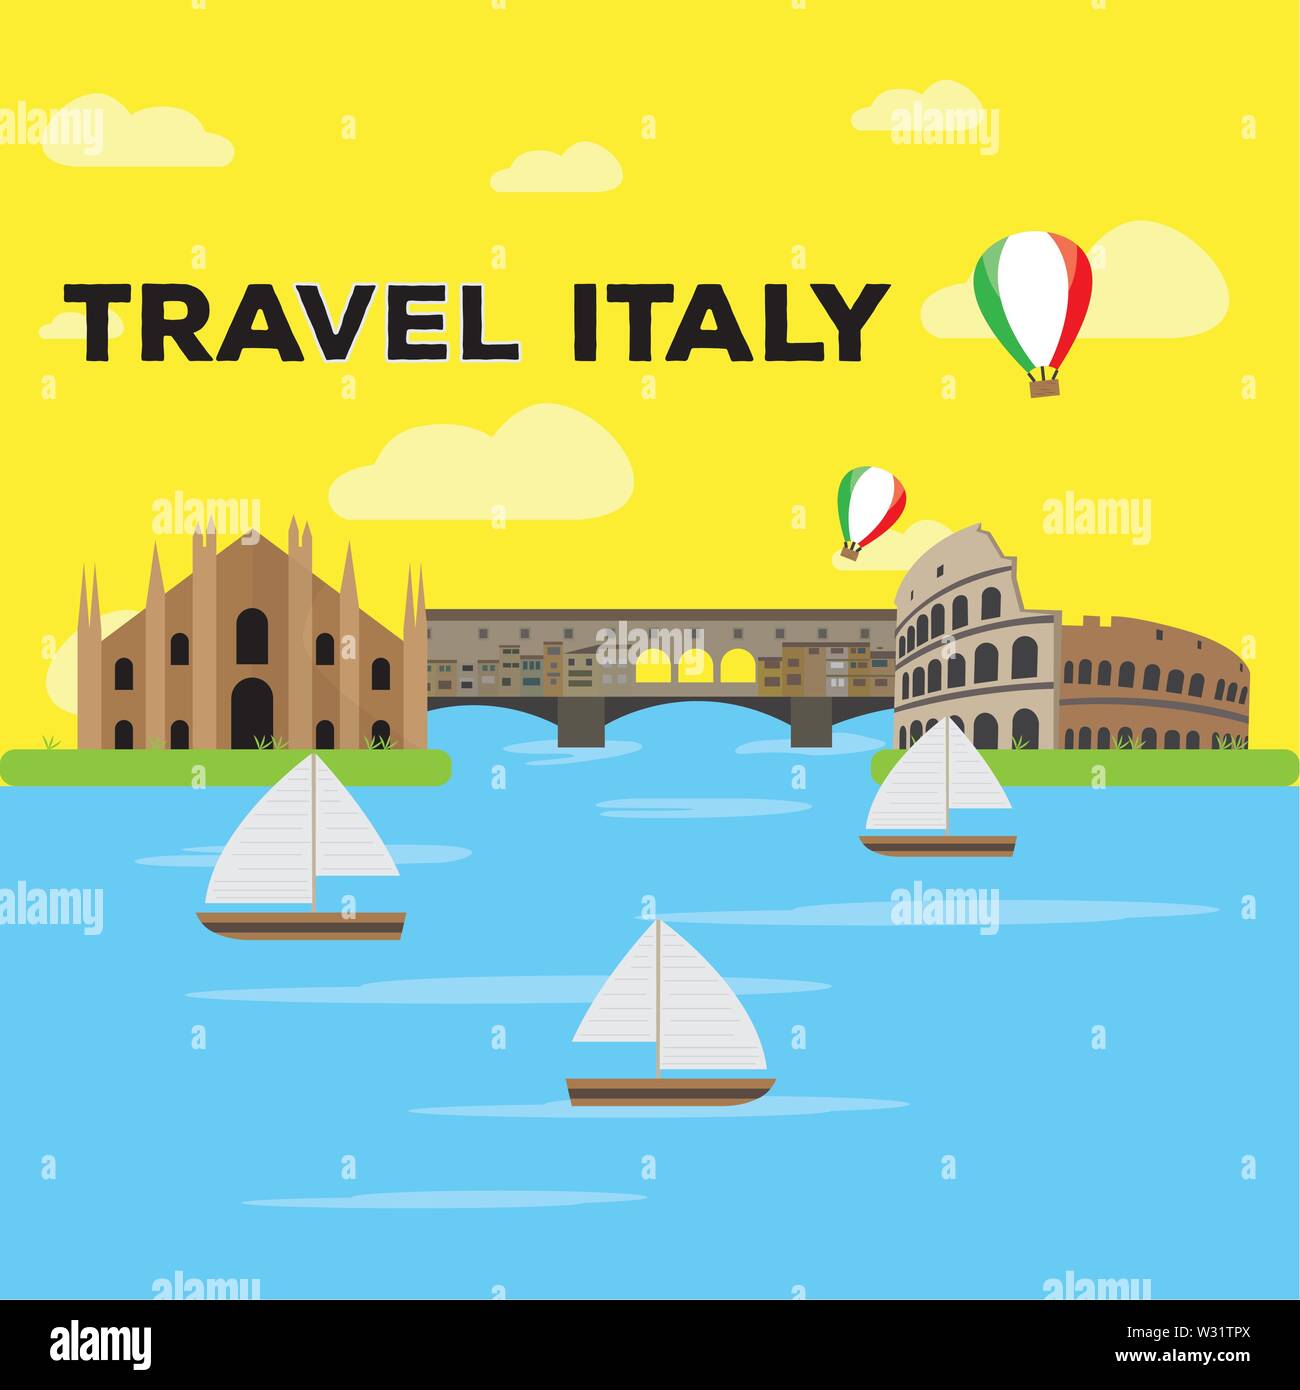 Farbige Landschaft mit berühmten Orte in Italien. Reisen nach Italien - Vektor Stock Vektor